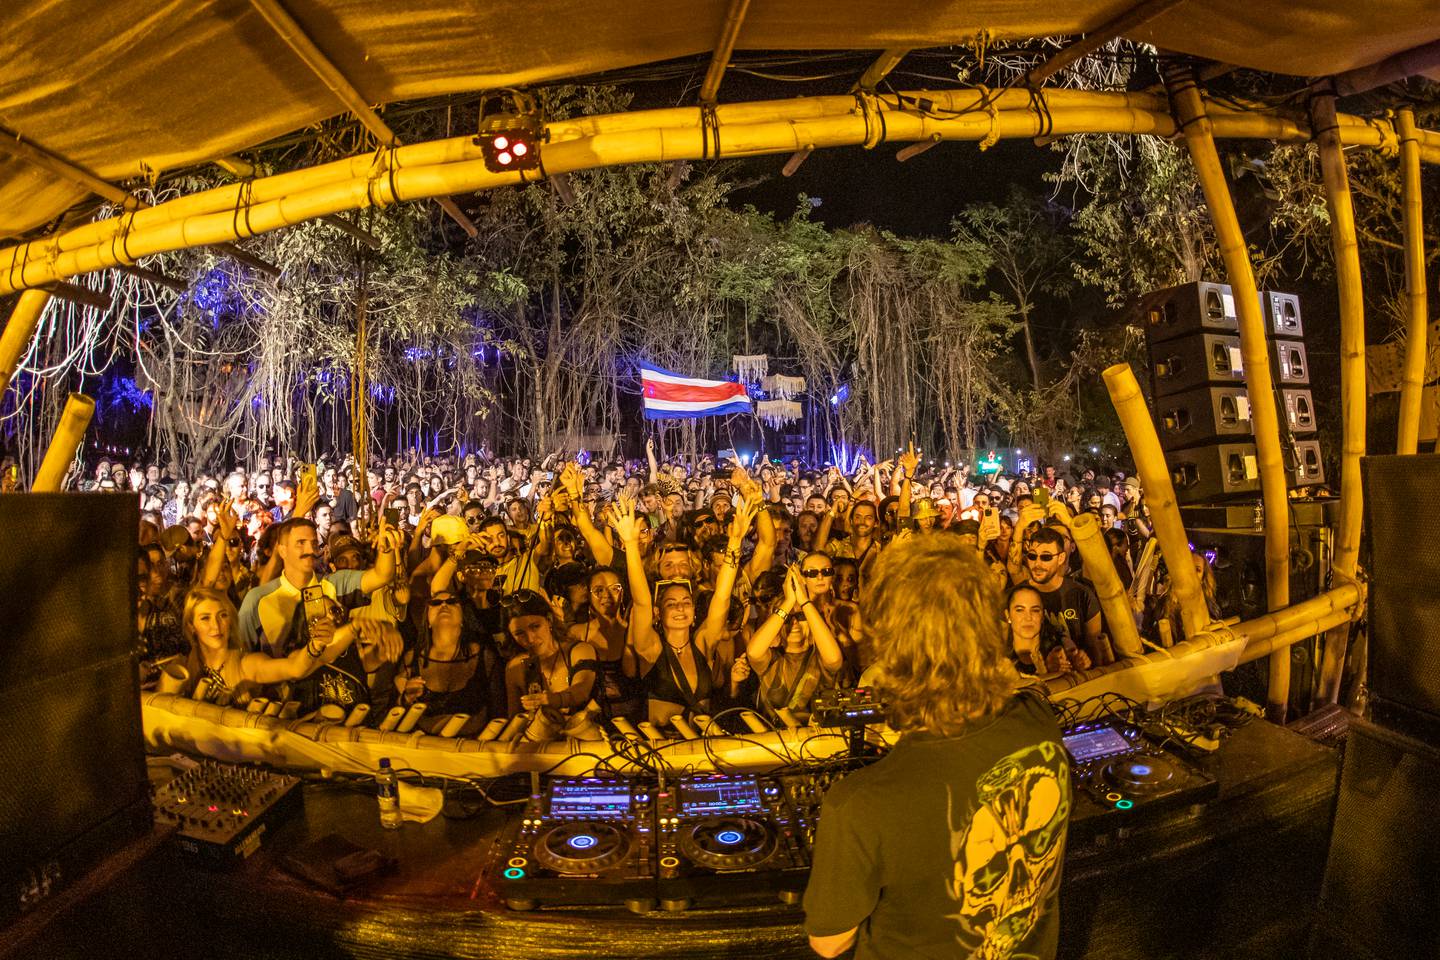 La fiesta del BPM Festival volverá a Costa Rica con cinco días de fiesta electrónica en Tamarindo.